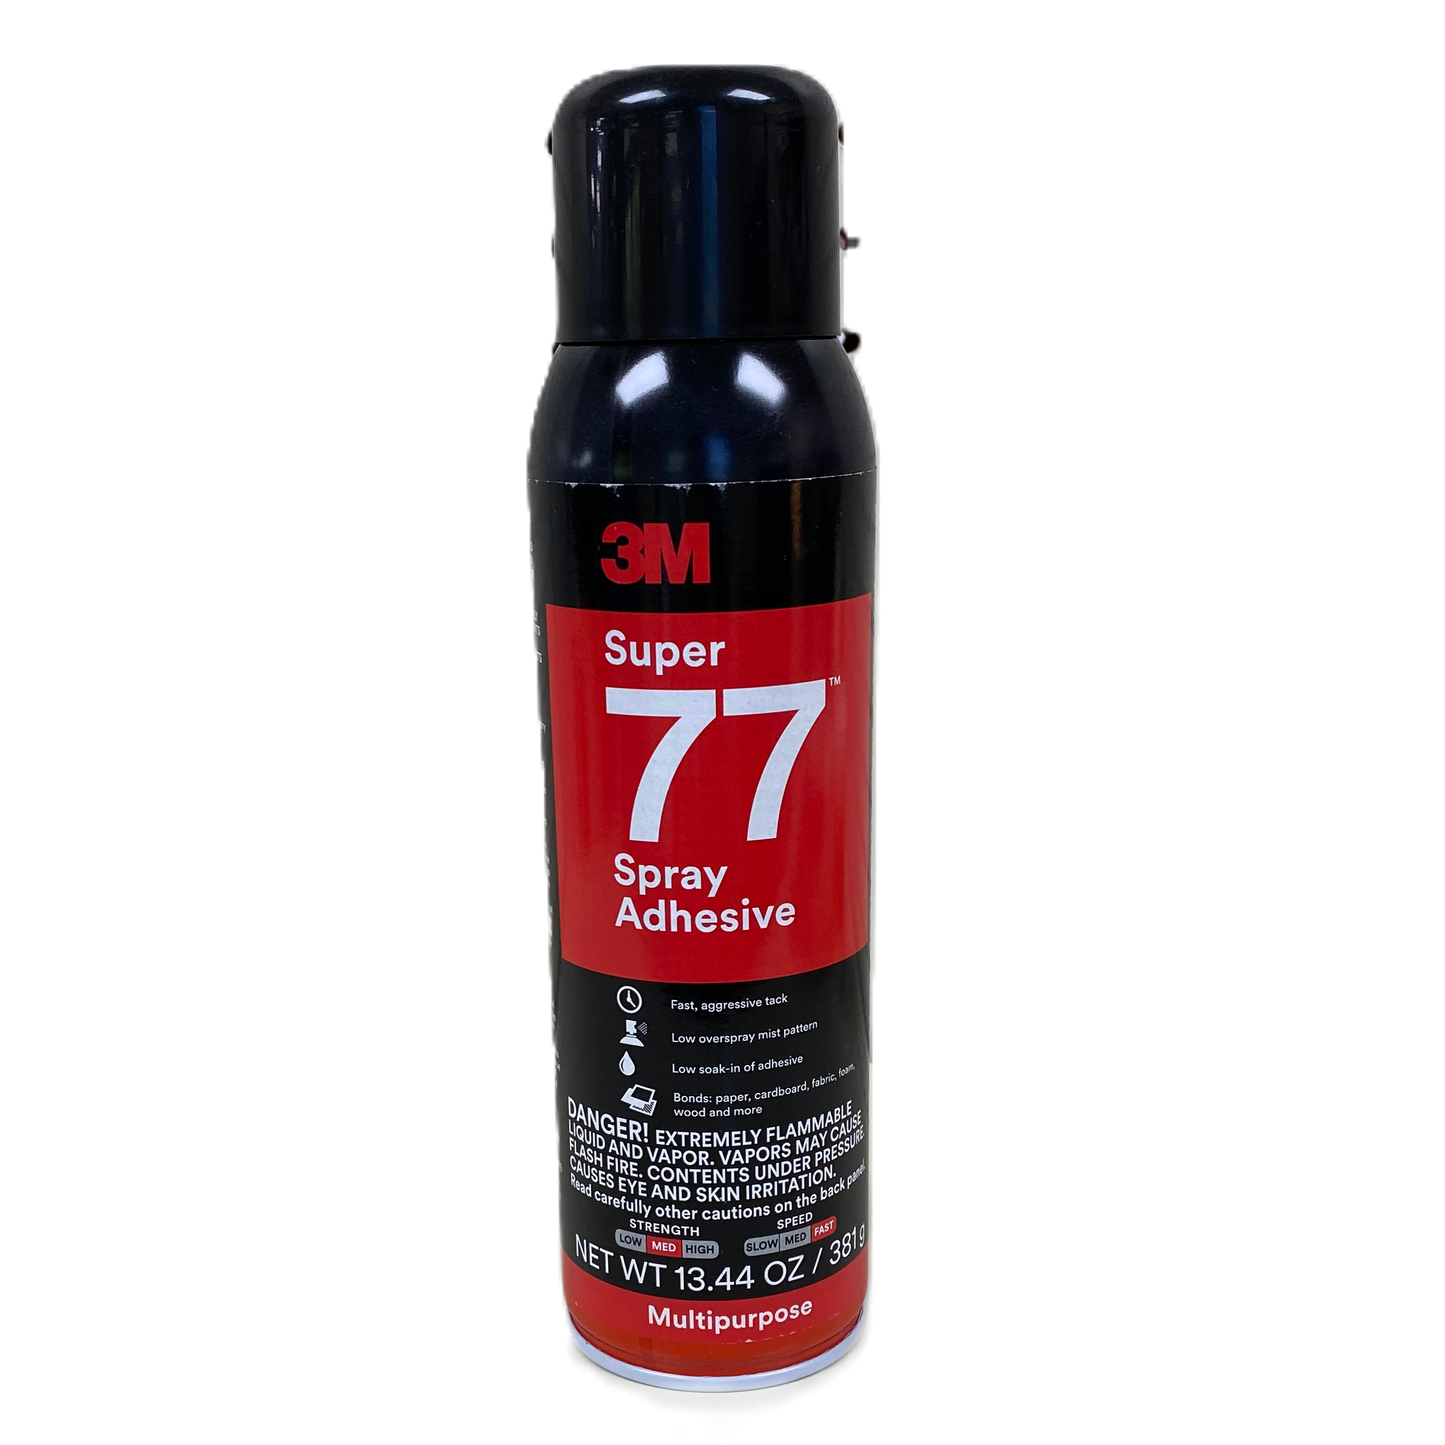 3M Super 77, Multipurpose Spray Adhesive